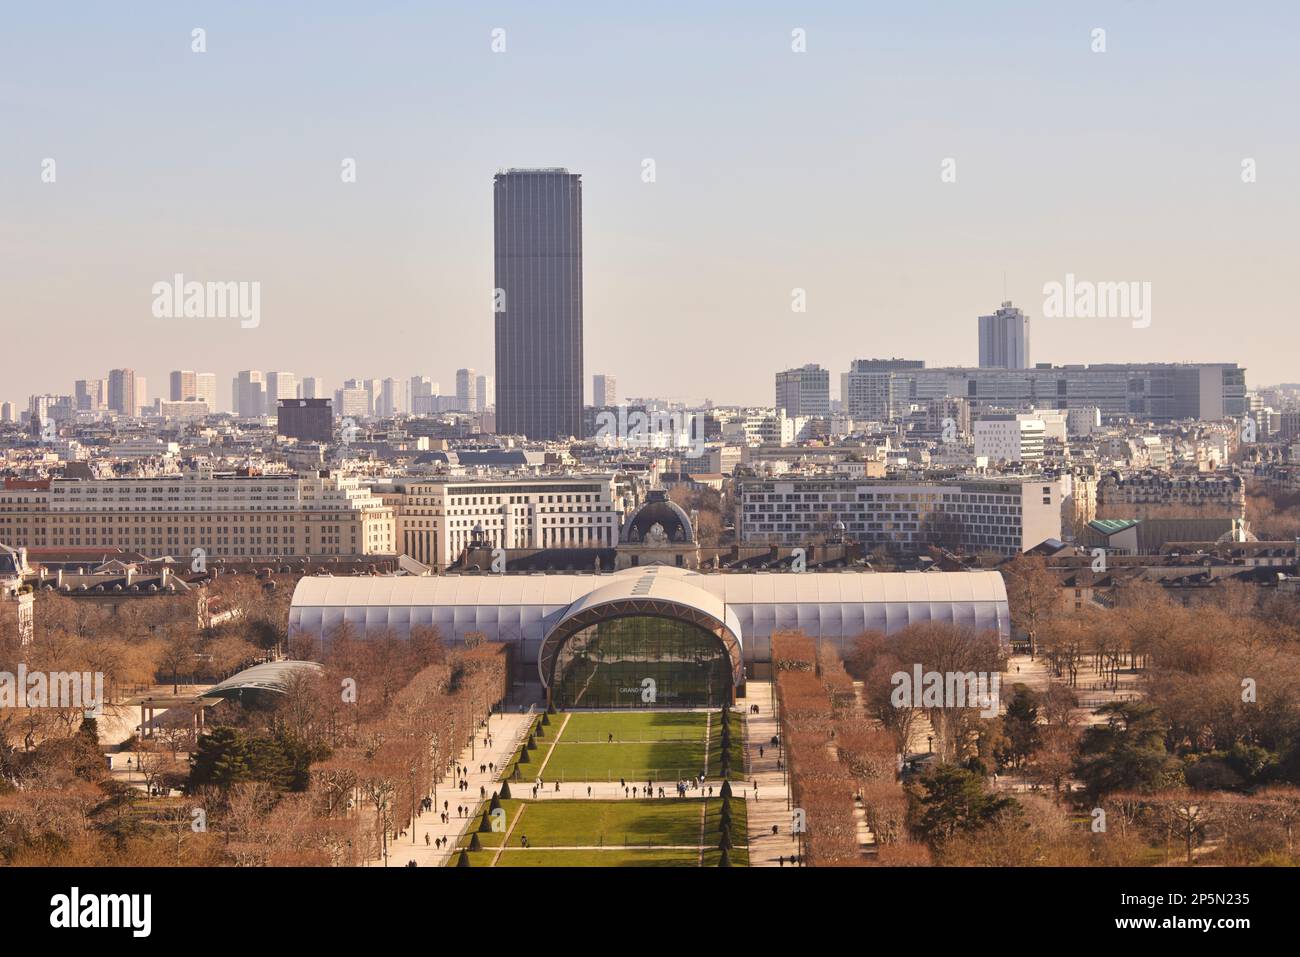 Le Grand Palais Éphémère de Paris accueille des expositions temporaires tandis que le Grand Palais est rénové pour les Jeux Olympiques d'été 2024. Banque D'Images